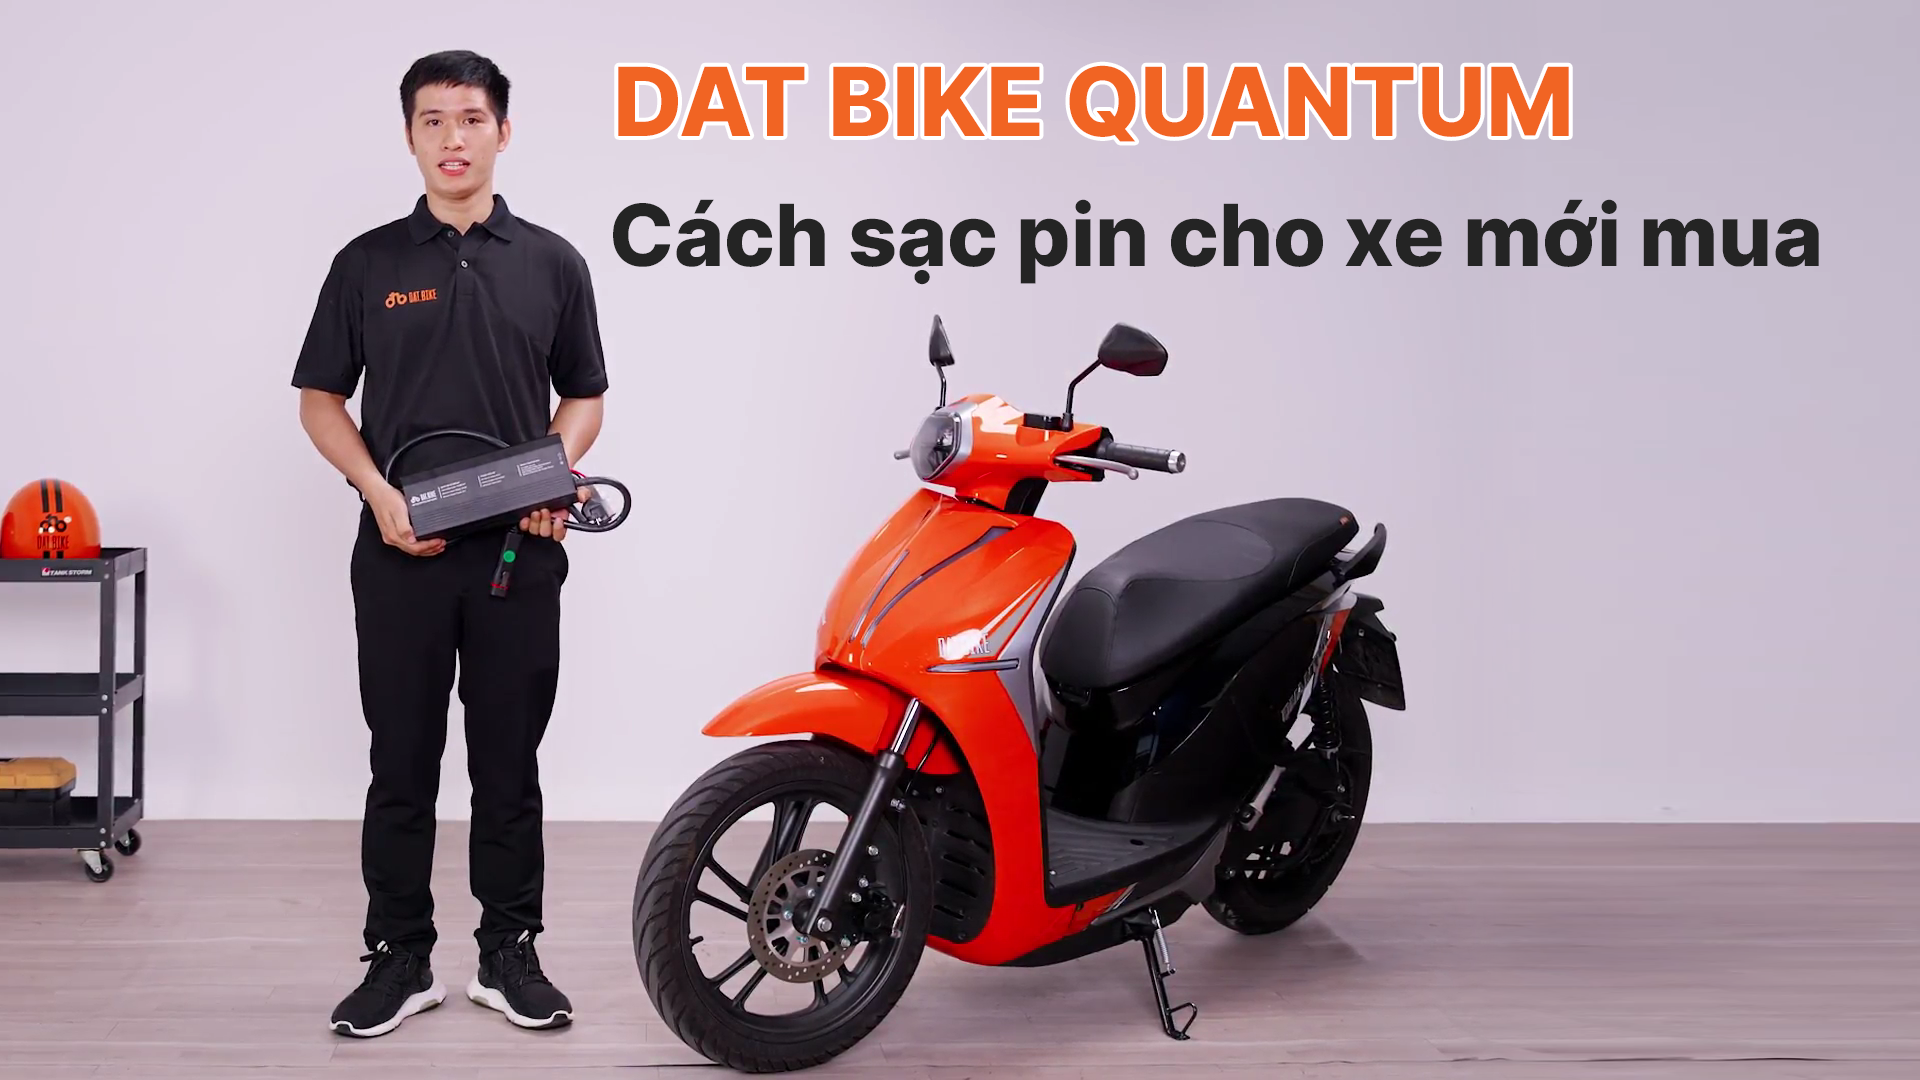 Thay đổi cách tính phần trăm pin và Cách sạc pin cho xe Dat Bike Quantum mới mua